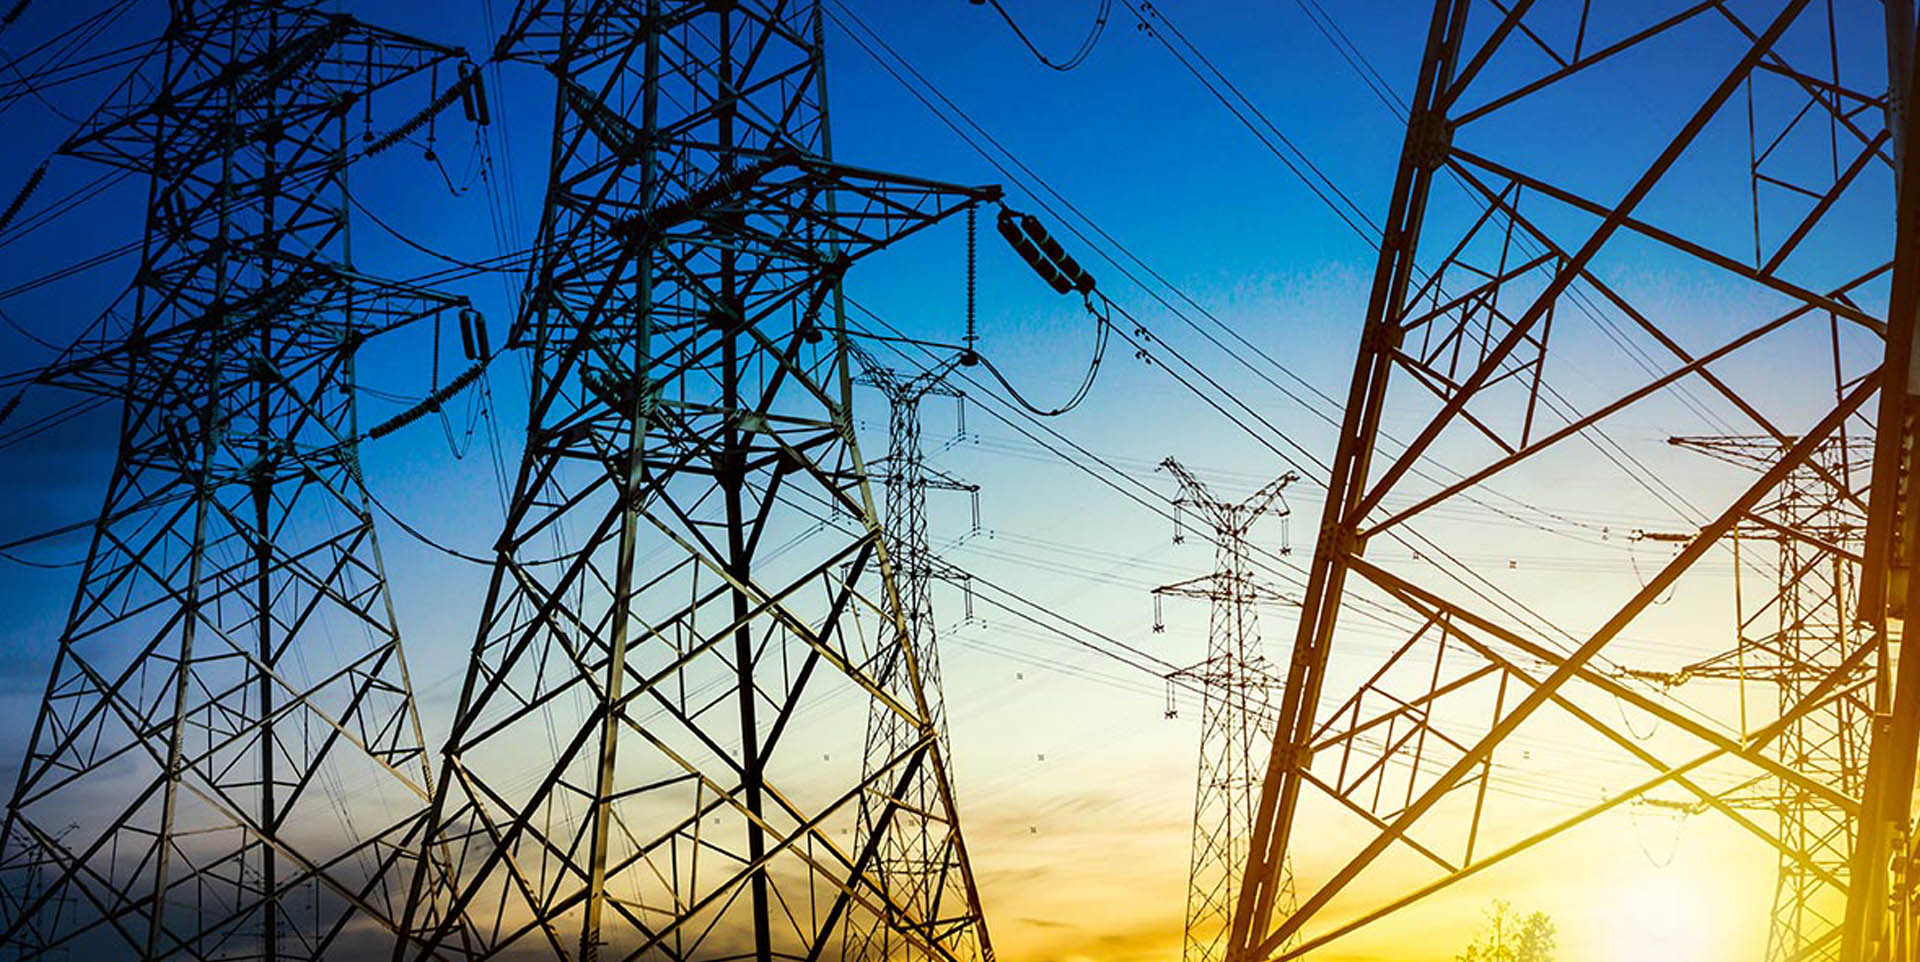 La iniciativa de reforma al sector eléctrico resta competitividad a México